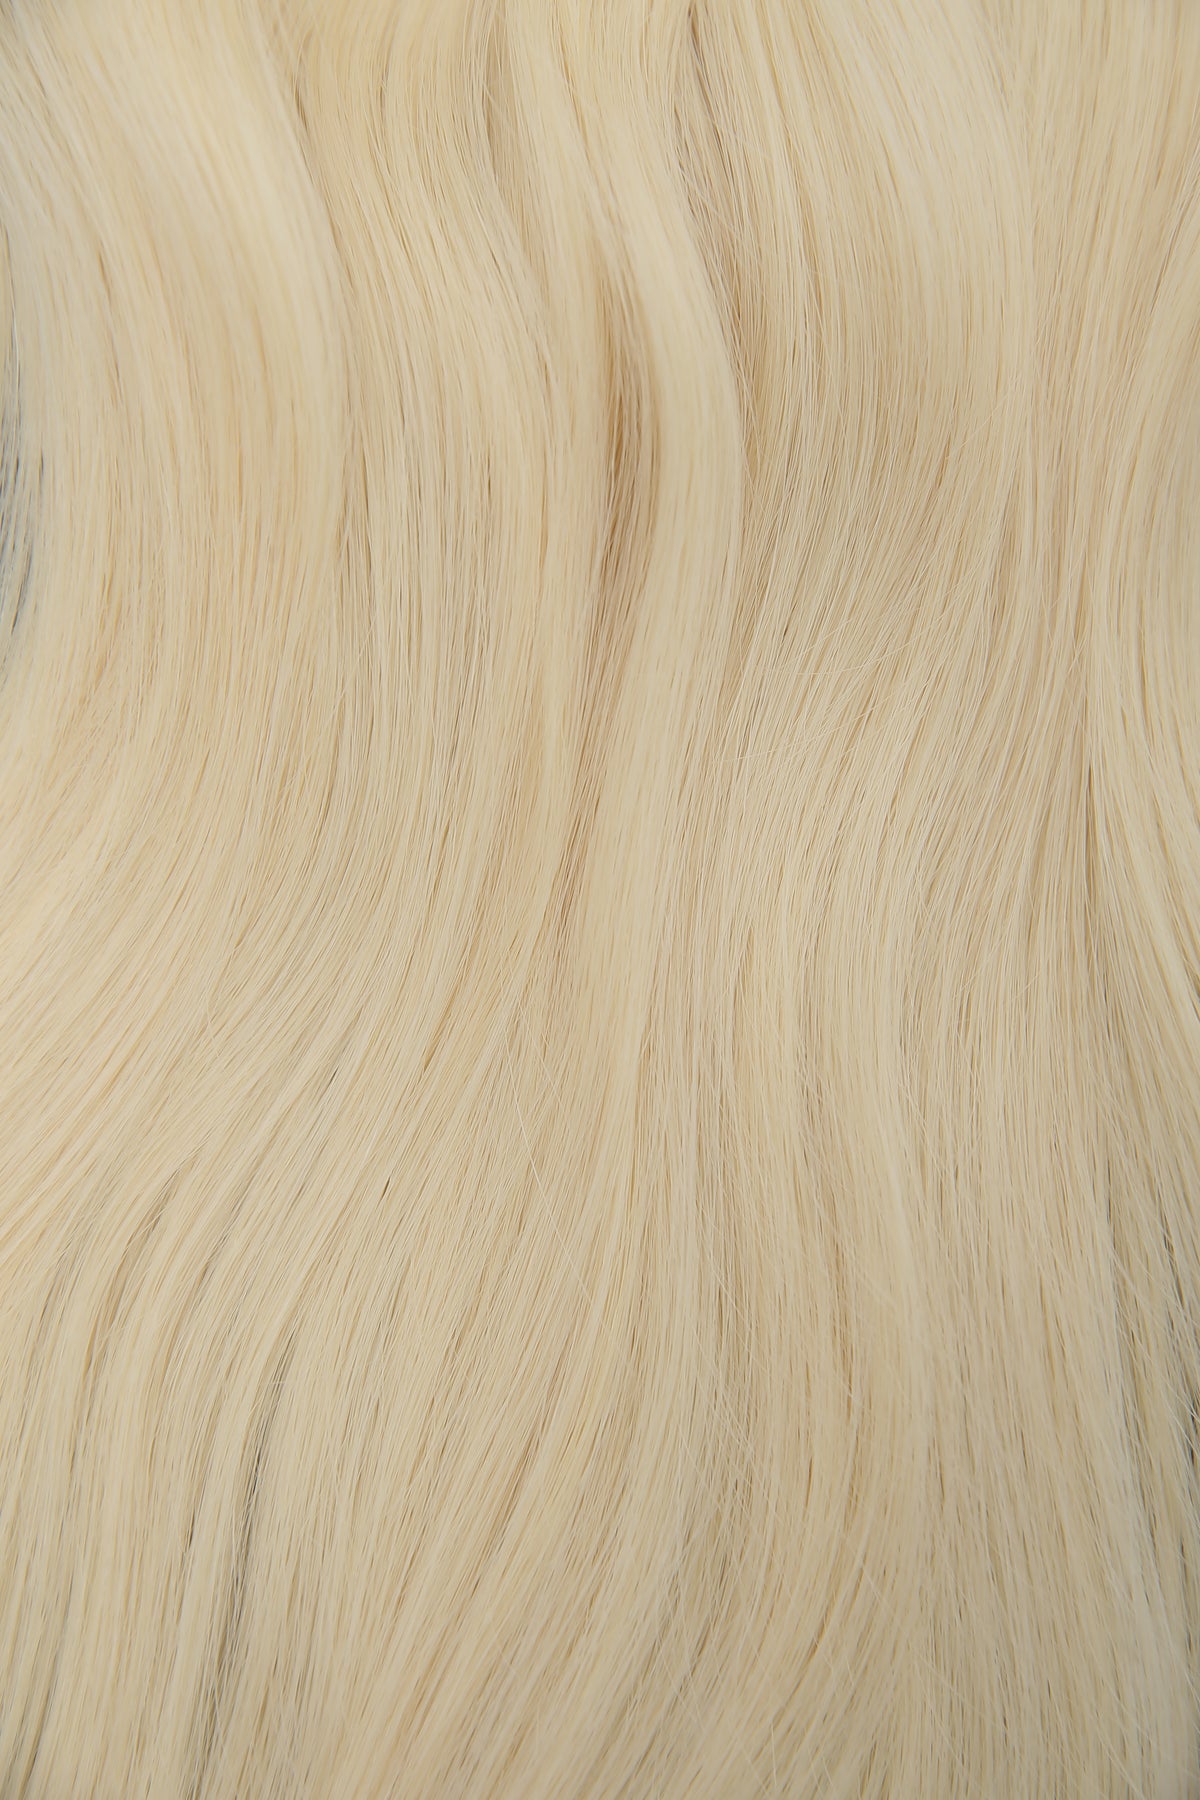 #613 Platinum Blonde Classic Clip In Hair Extensions 9pcs